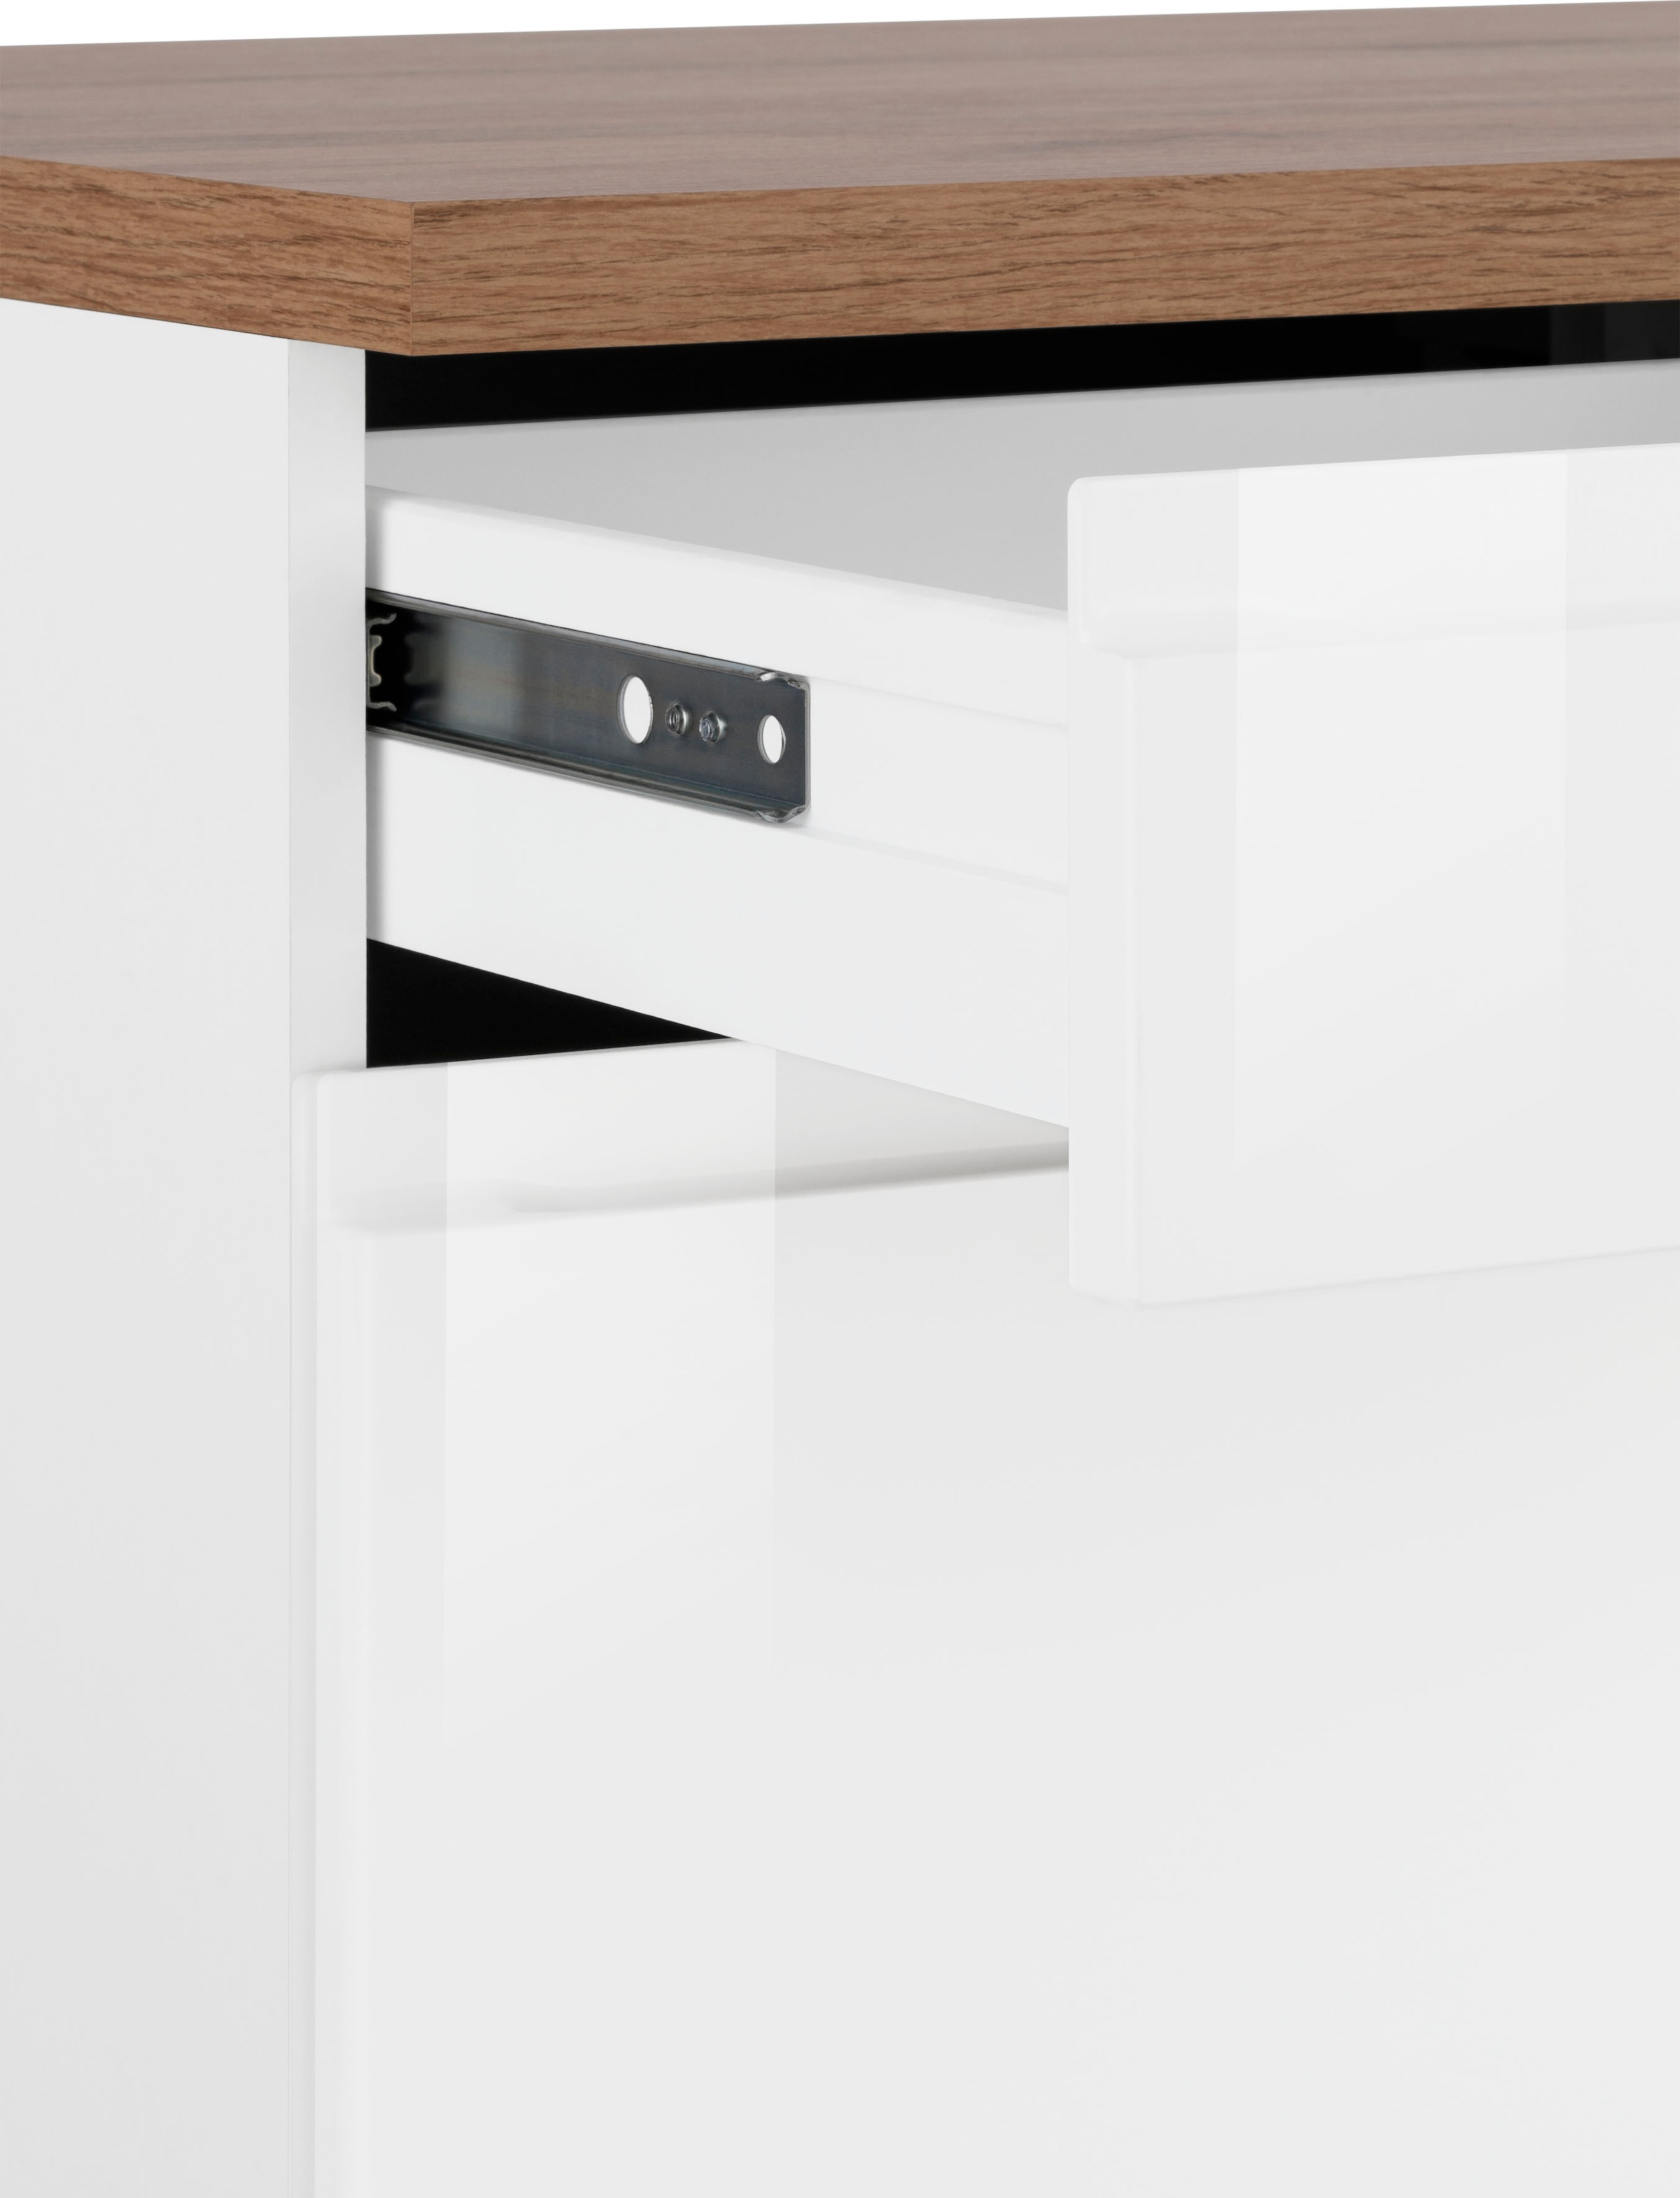 Kochstation Unterschrank »KS-Virginia«, 85 cm hoch, 150 cm breit, 3 Schubladen, 3 Türen, griffloses Design